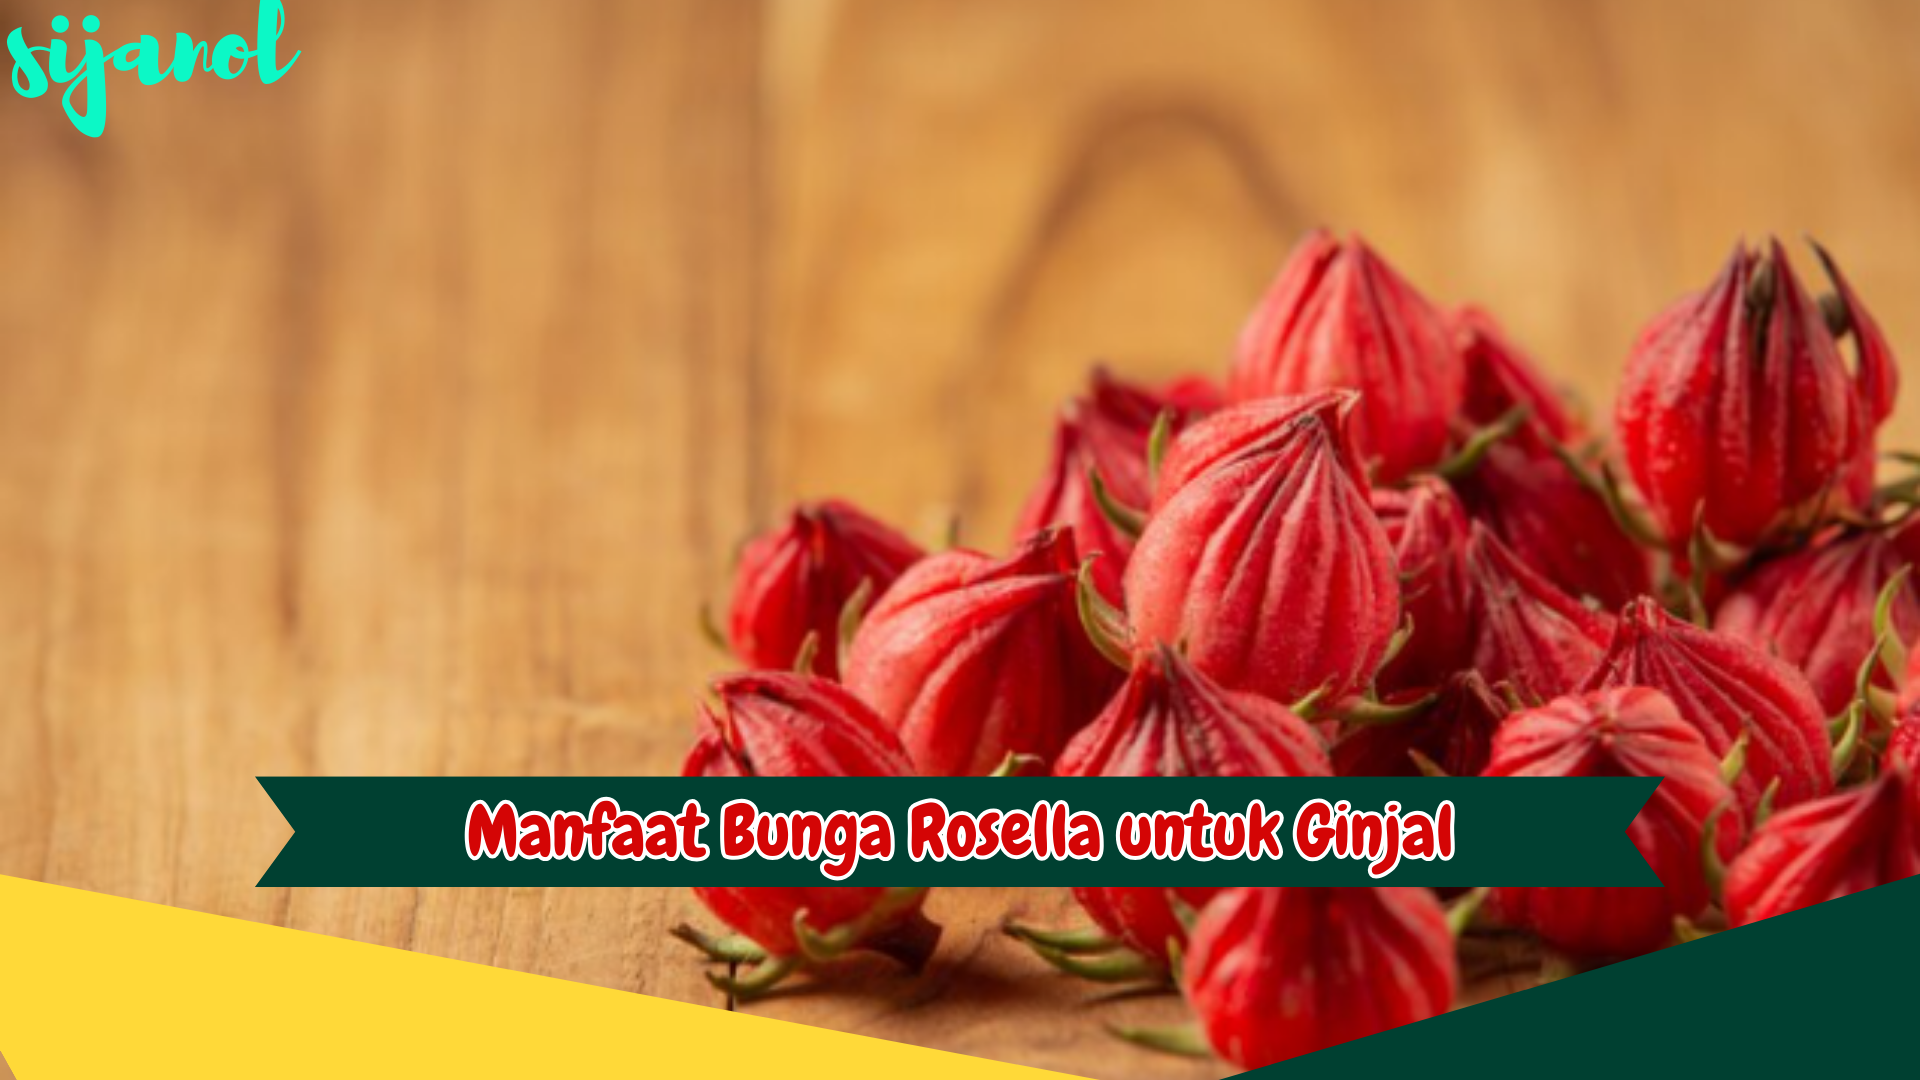 Manfaat Bunga Rosella untuk Ginjal